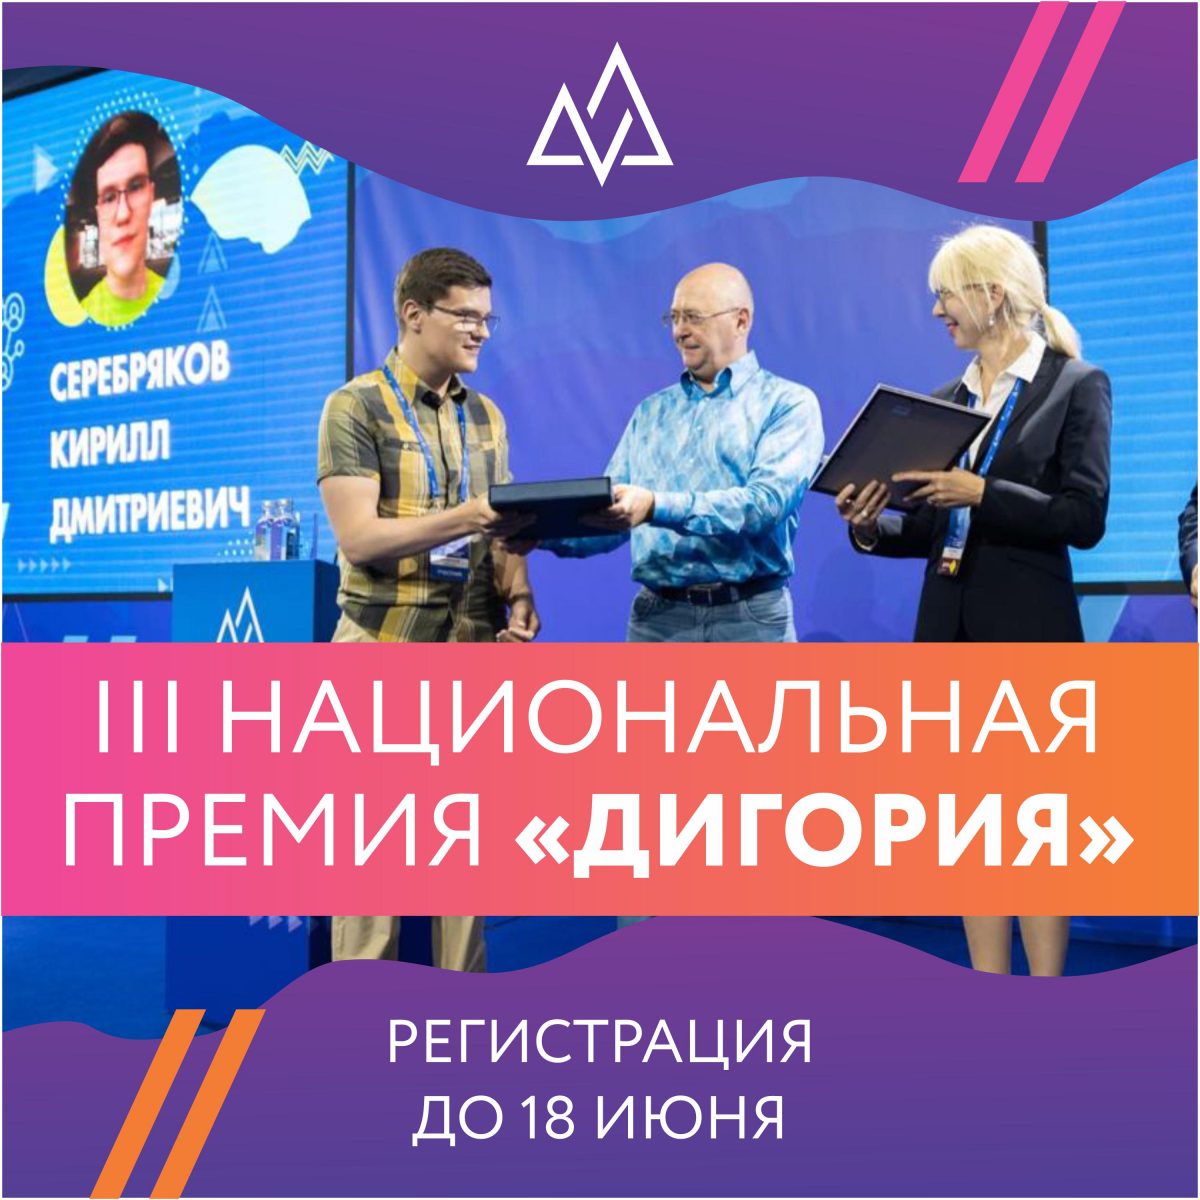 Жители Нижегородской области могут до 18 июня подать заявки на Национальную премию «Дигория»